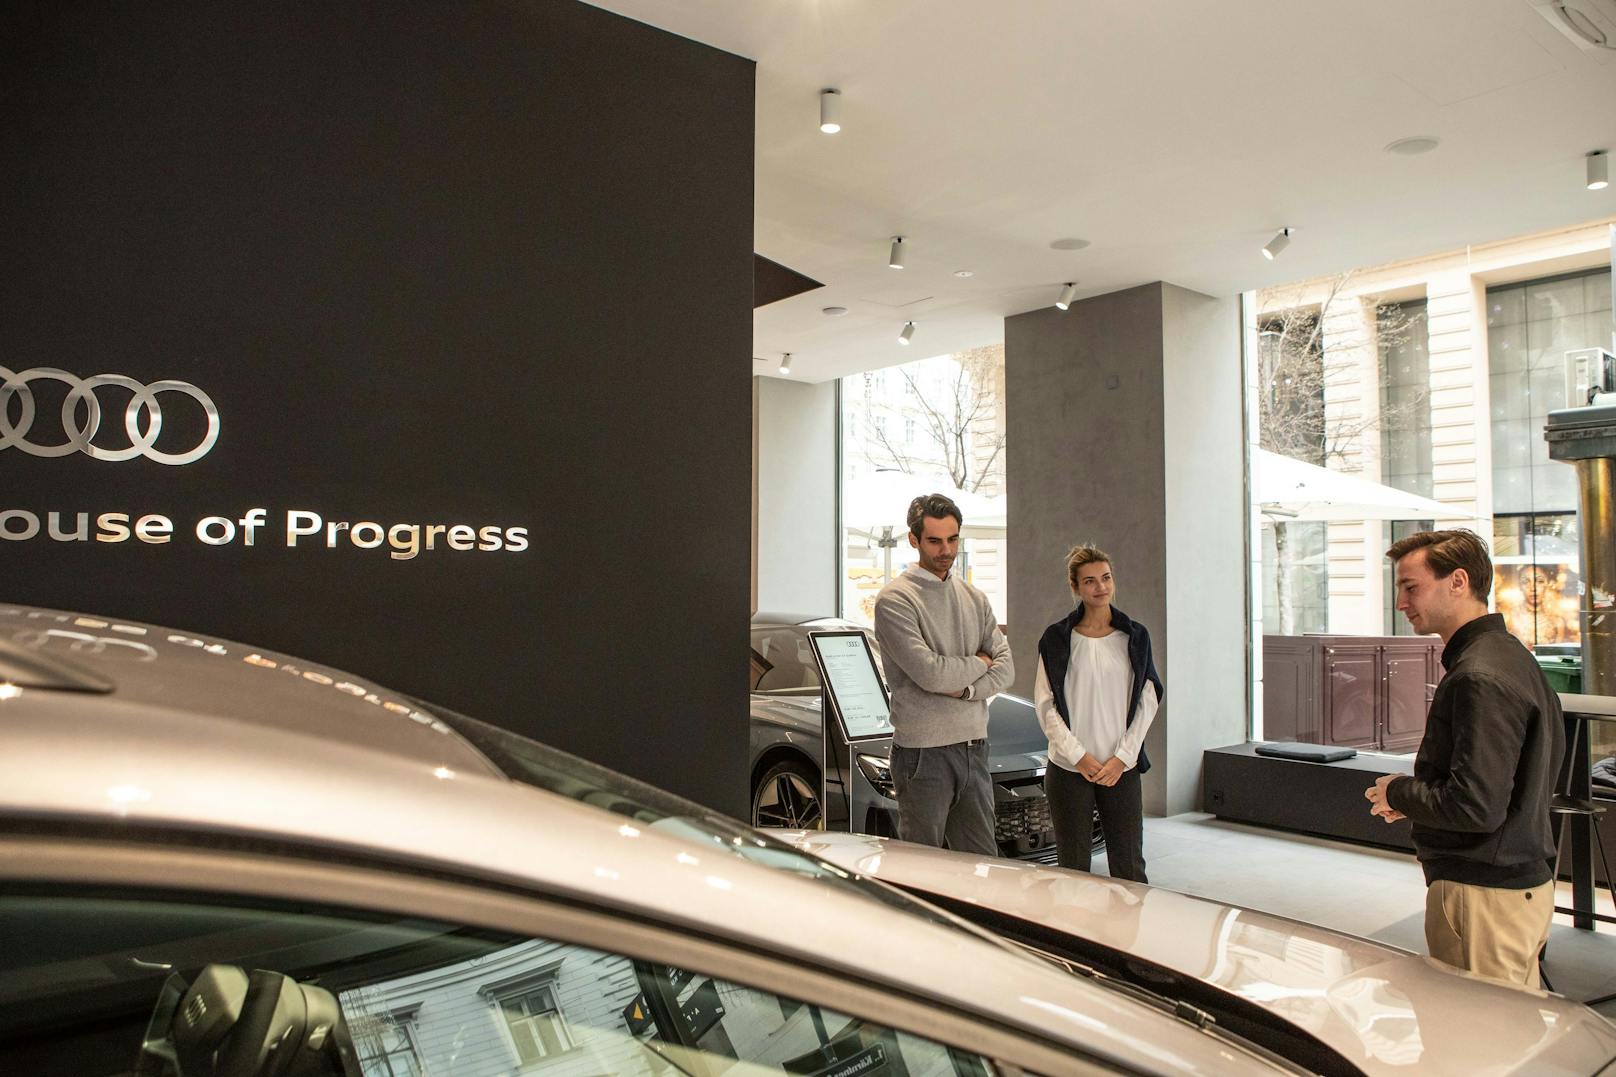 Das "Audi house of progress" als Mekka für E-Mobilität, intelligente Ladeinfrastruktur und Energiemanagement.